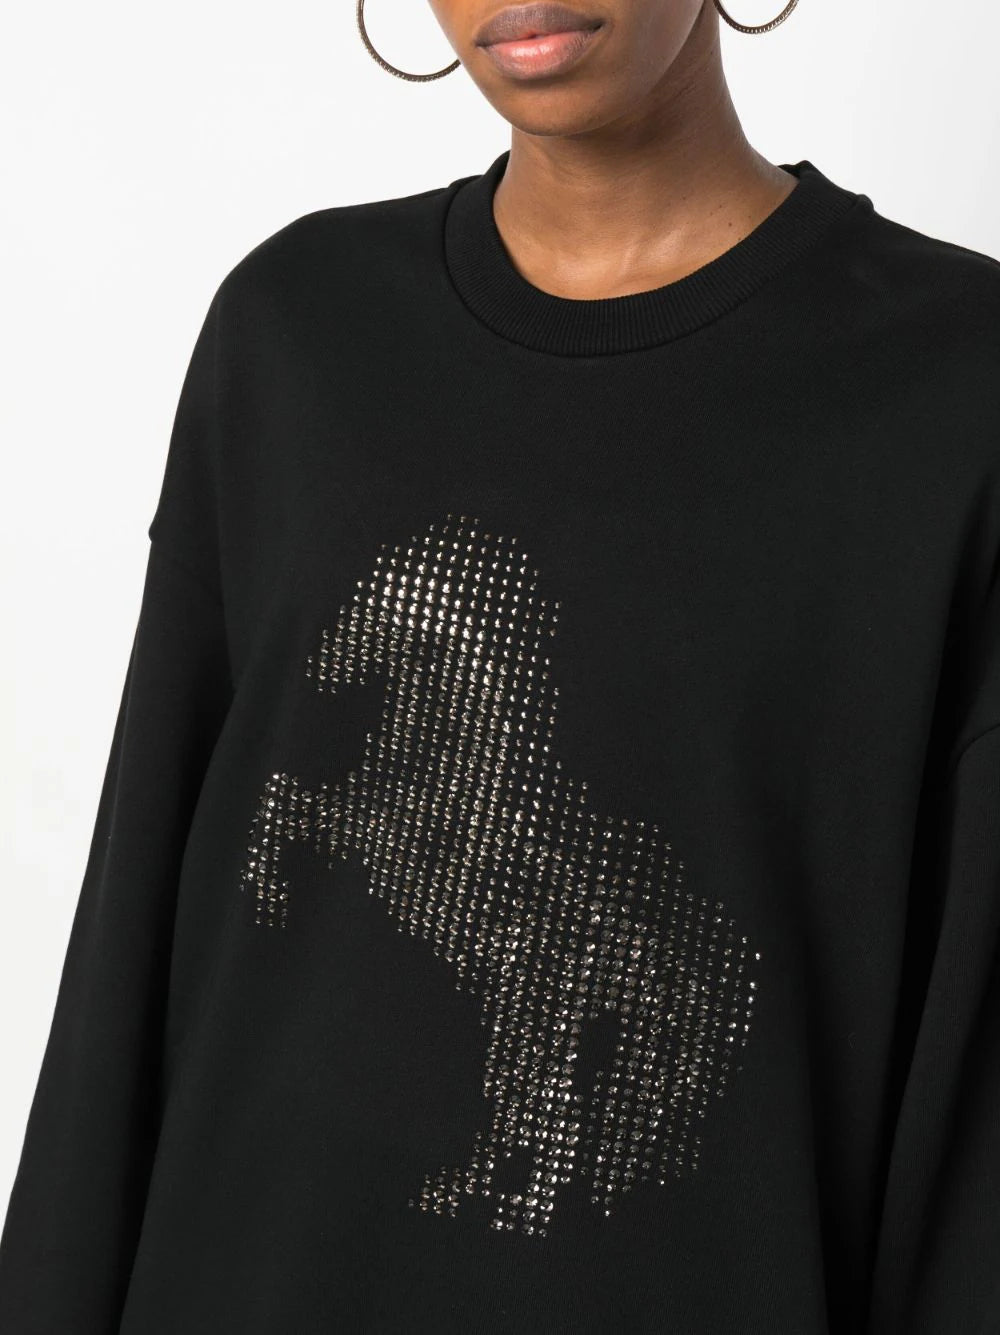 Stella McCartney: Hotfix Pixel Horse Sweatshirt, black